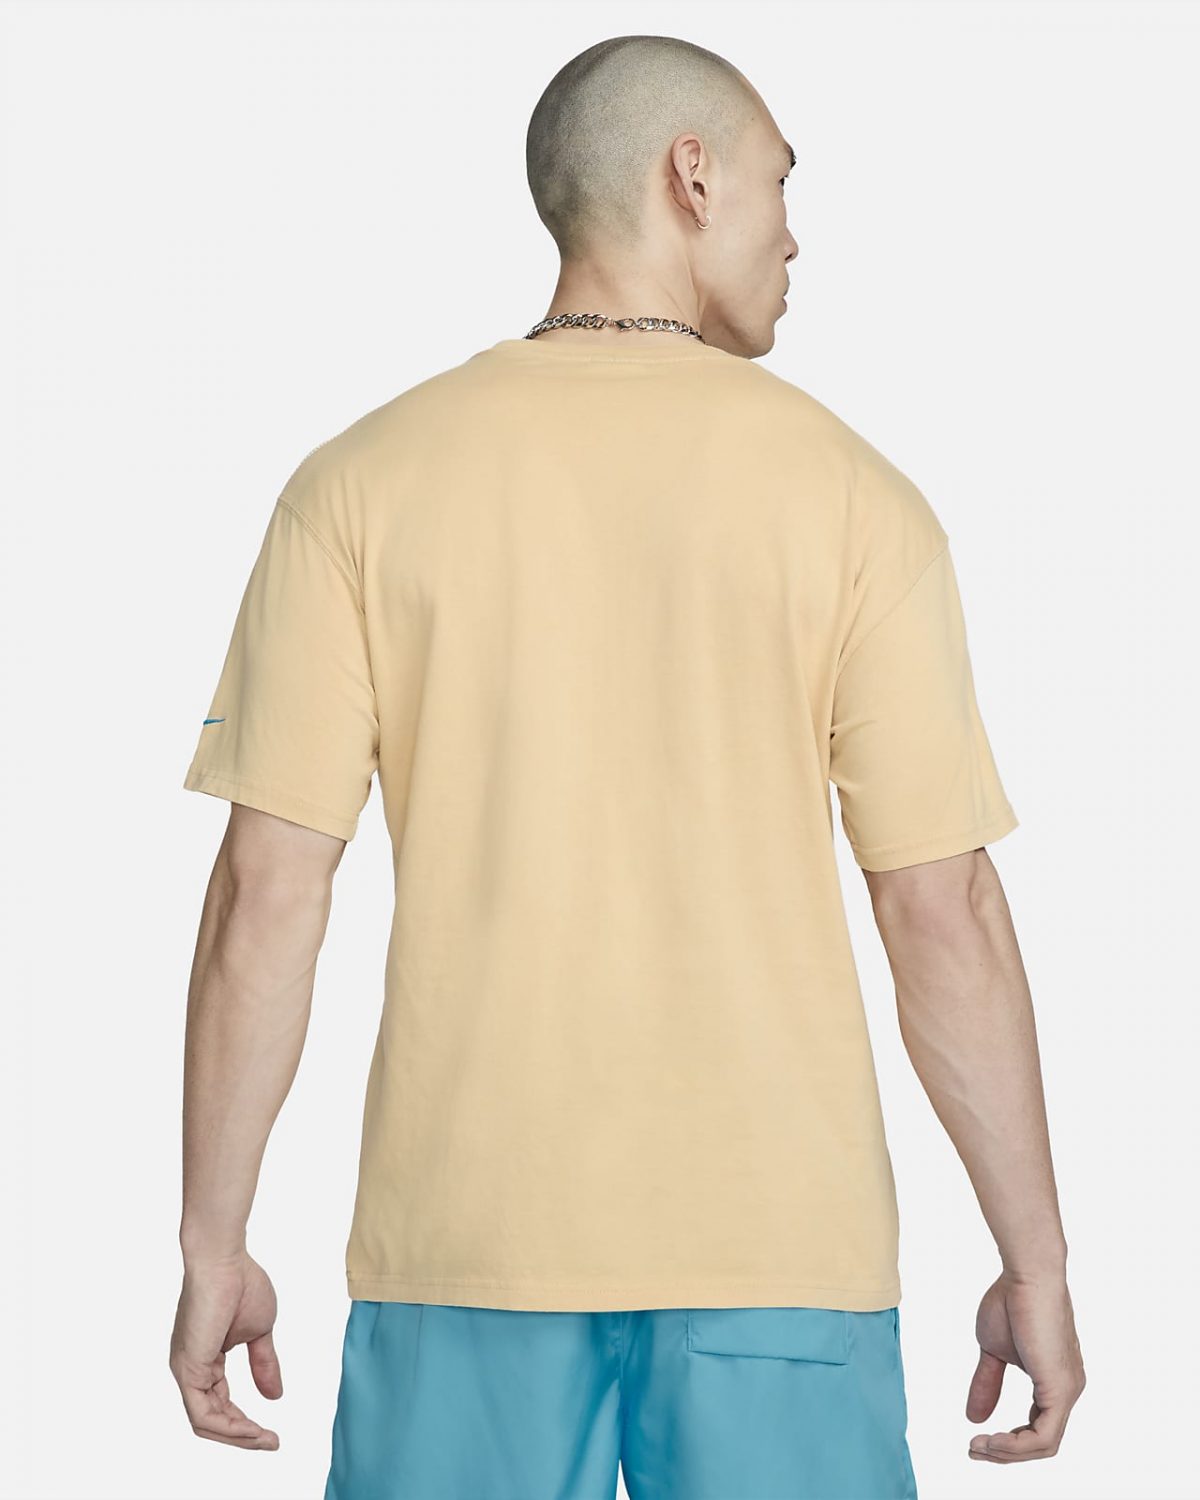 Мужская футболка Nike Sportswear коричневая фотография